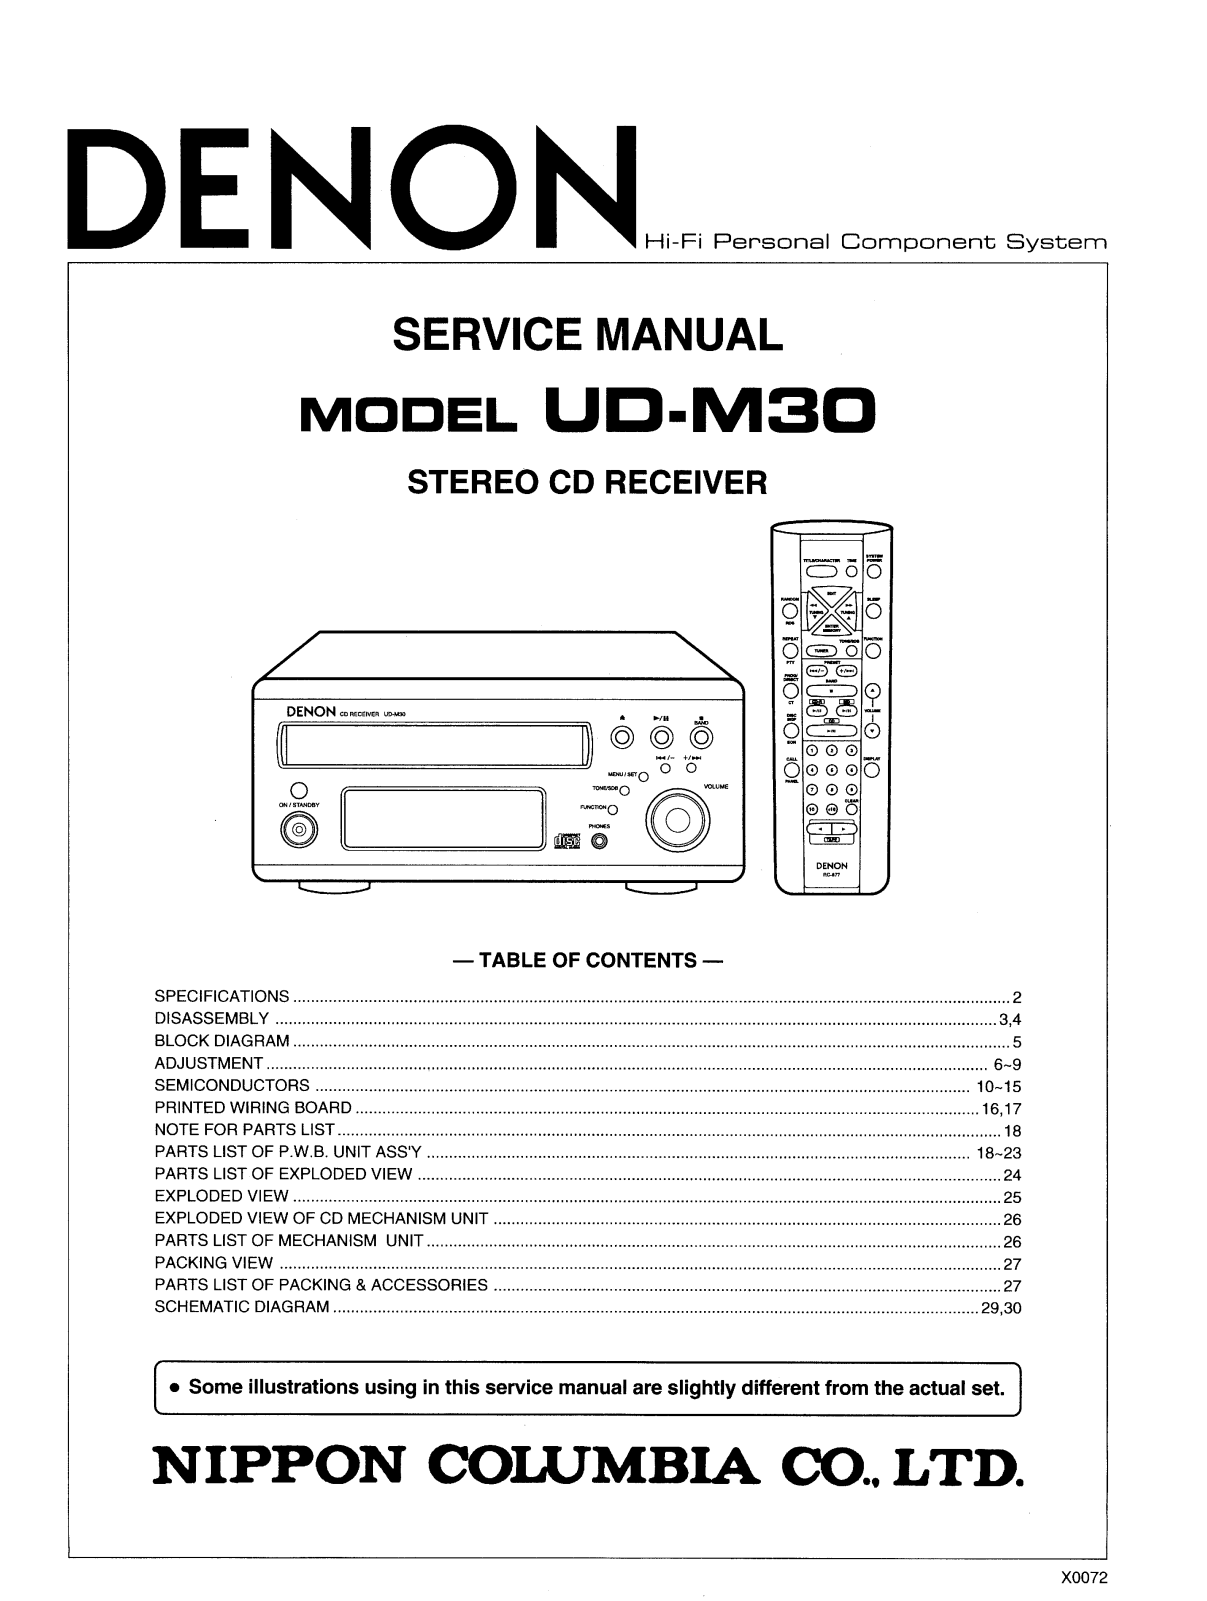 Bedienungsanleitung-Operating Instructions für Denon UD-M50 